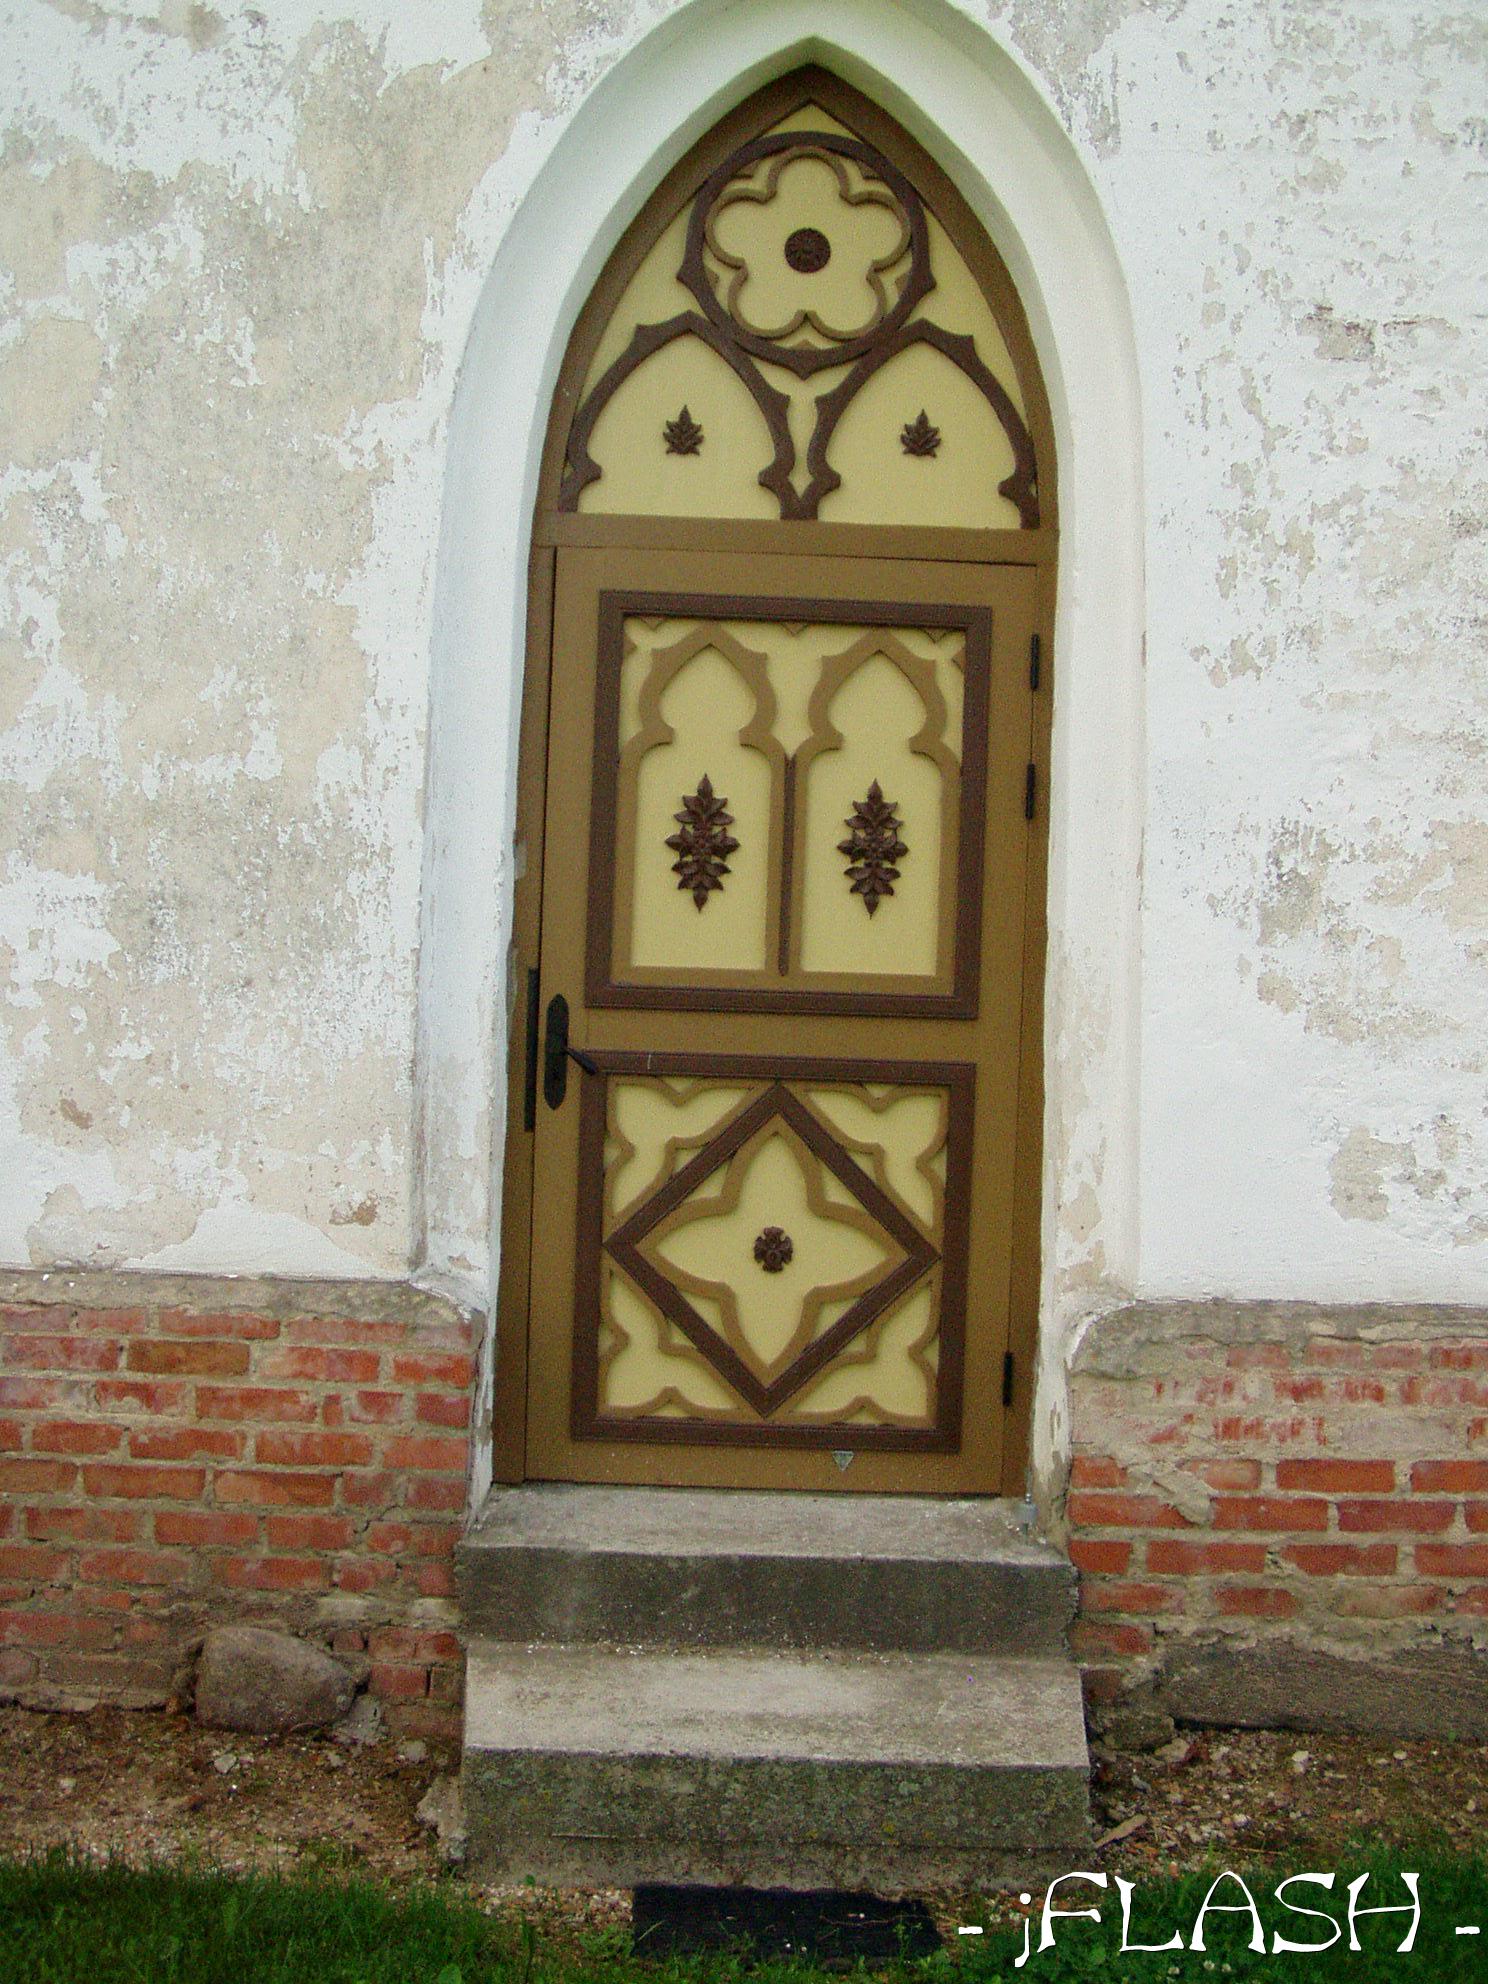 Kiriku uks.. kenasti nikerdatud
Võtmesõnad: kirik uks